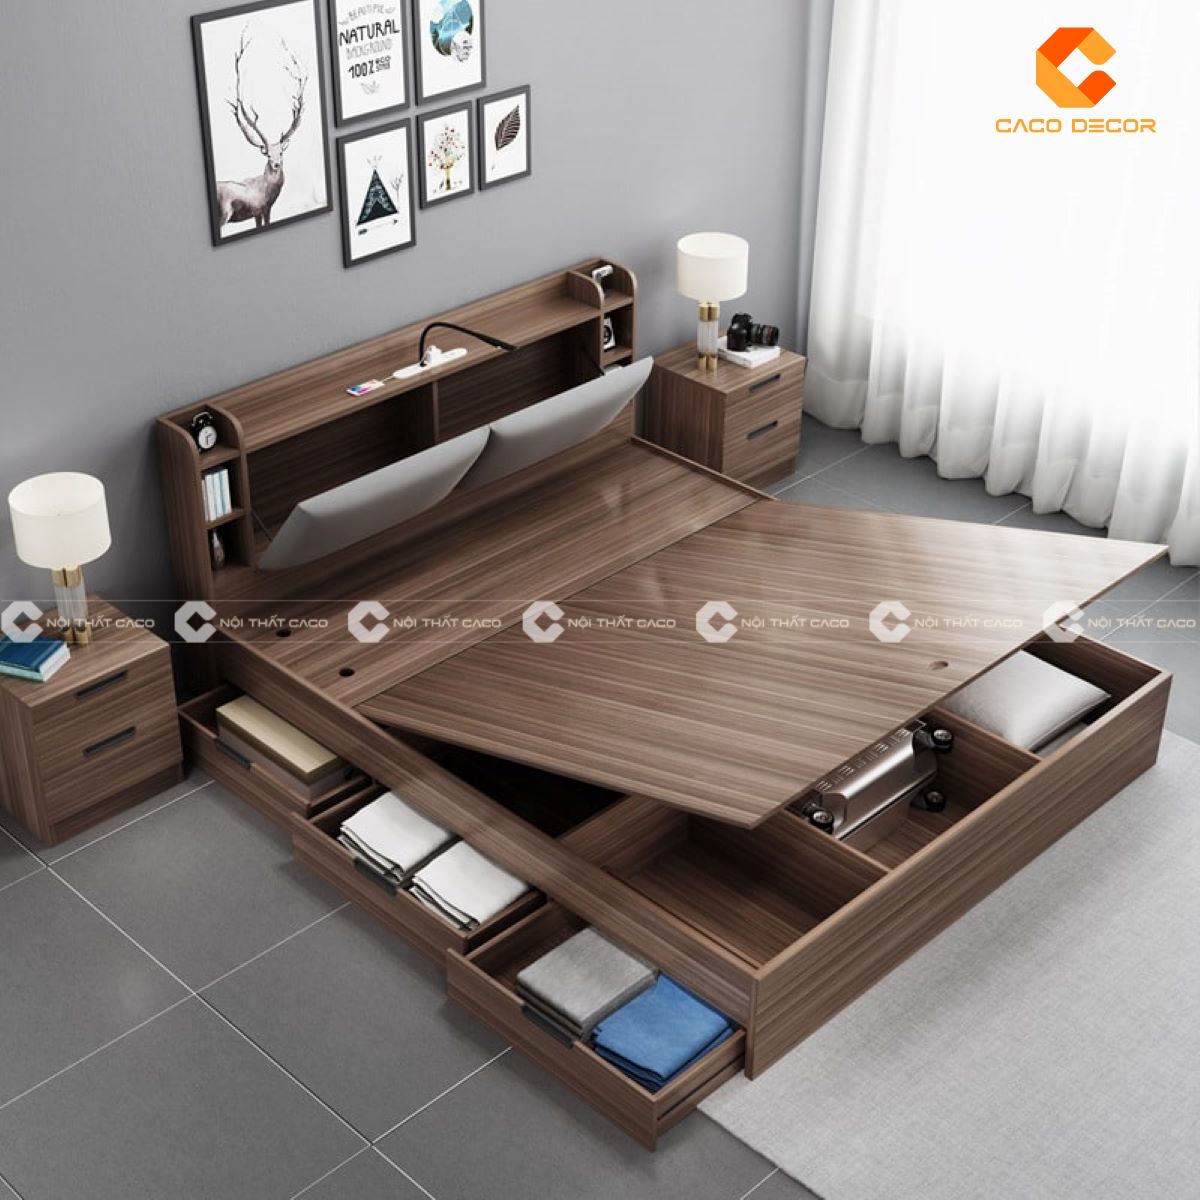 CaCo chuyên phân phối giường ngủ cao cấp - đa dạng phong cách 10